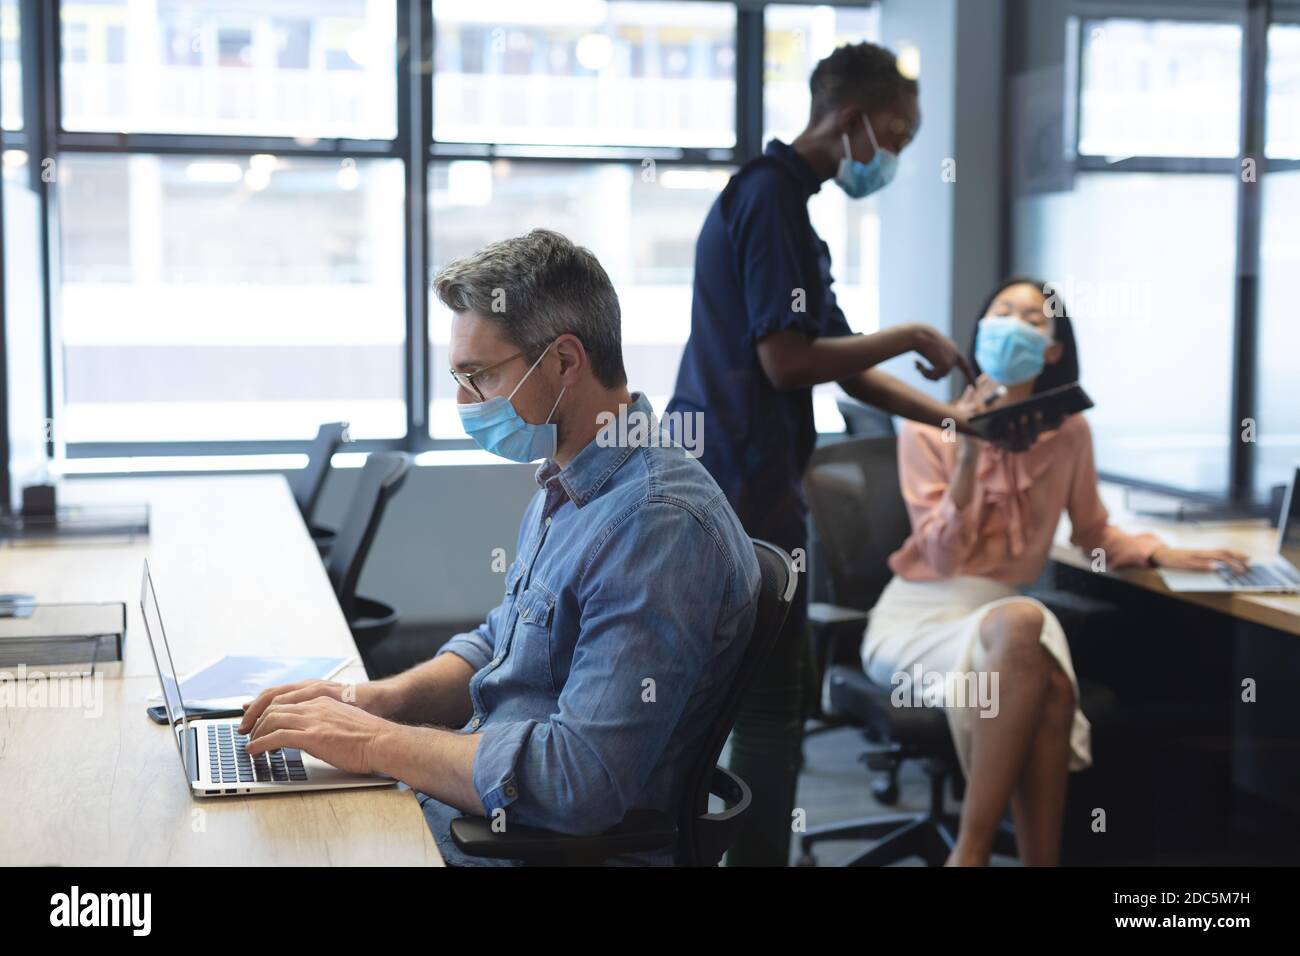 Kaukasischen Mann trägt Gesichtsmaske mit Laptop, während african american Frau und asiatische Frau tragen fa Stockfoto